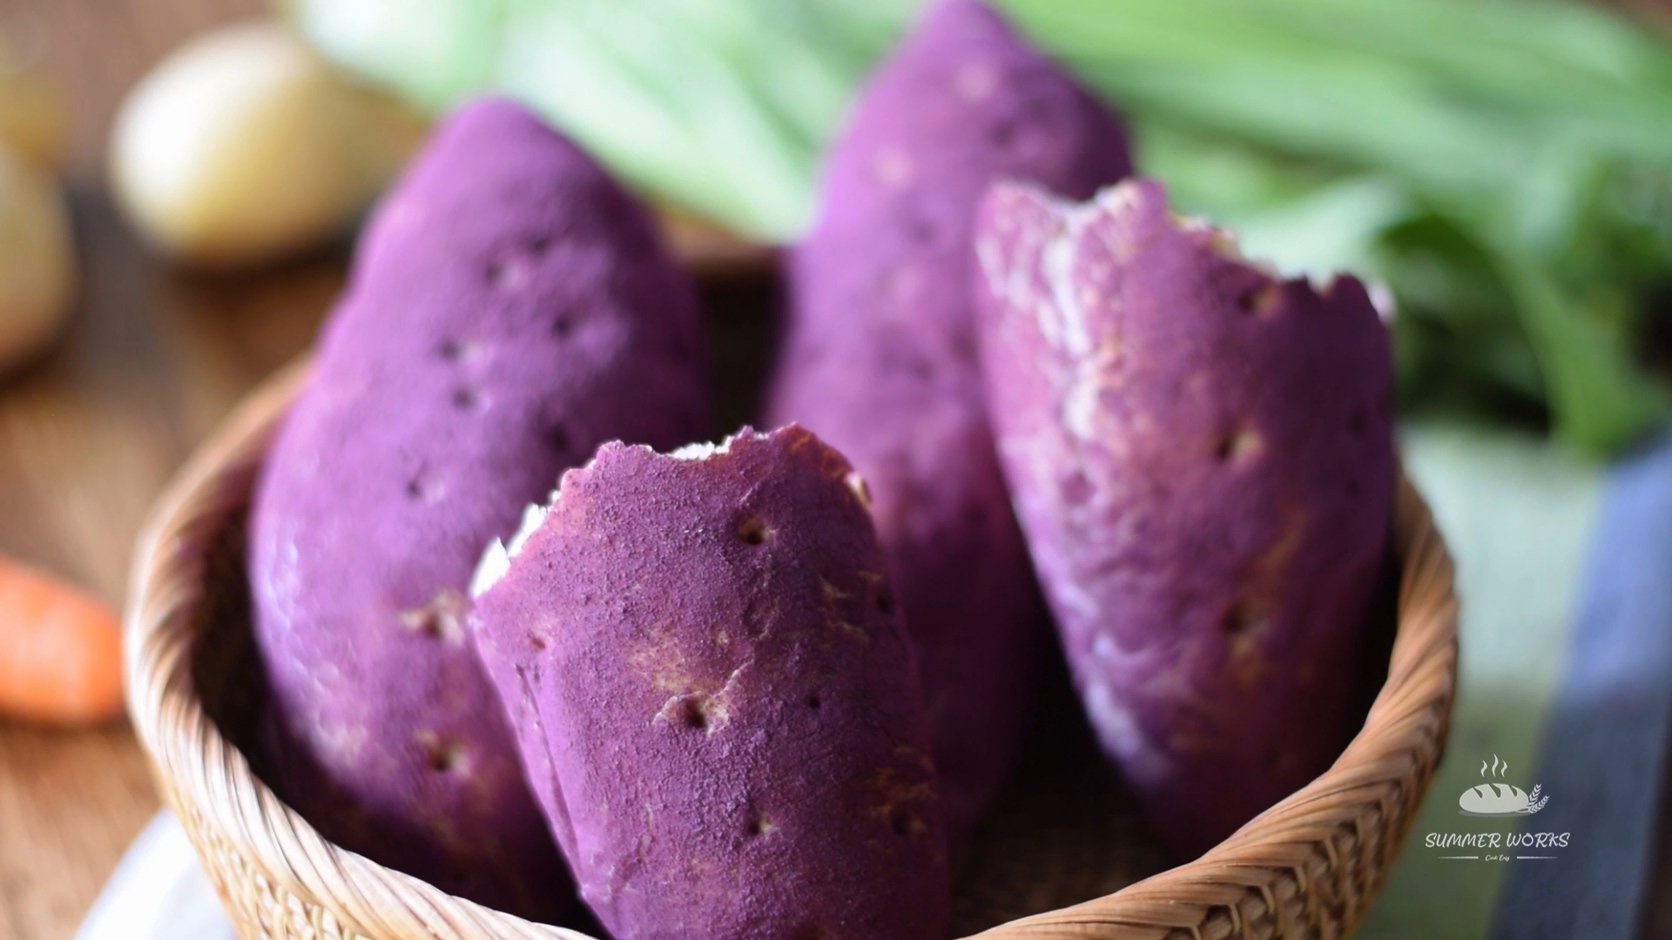 紫薯面包 _汤种、超柔软、仿真 Purple Sweet Potato Buns looks li.mp4_20201229_1933.jpg